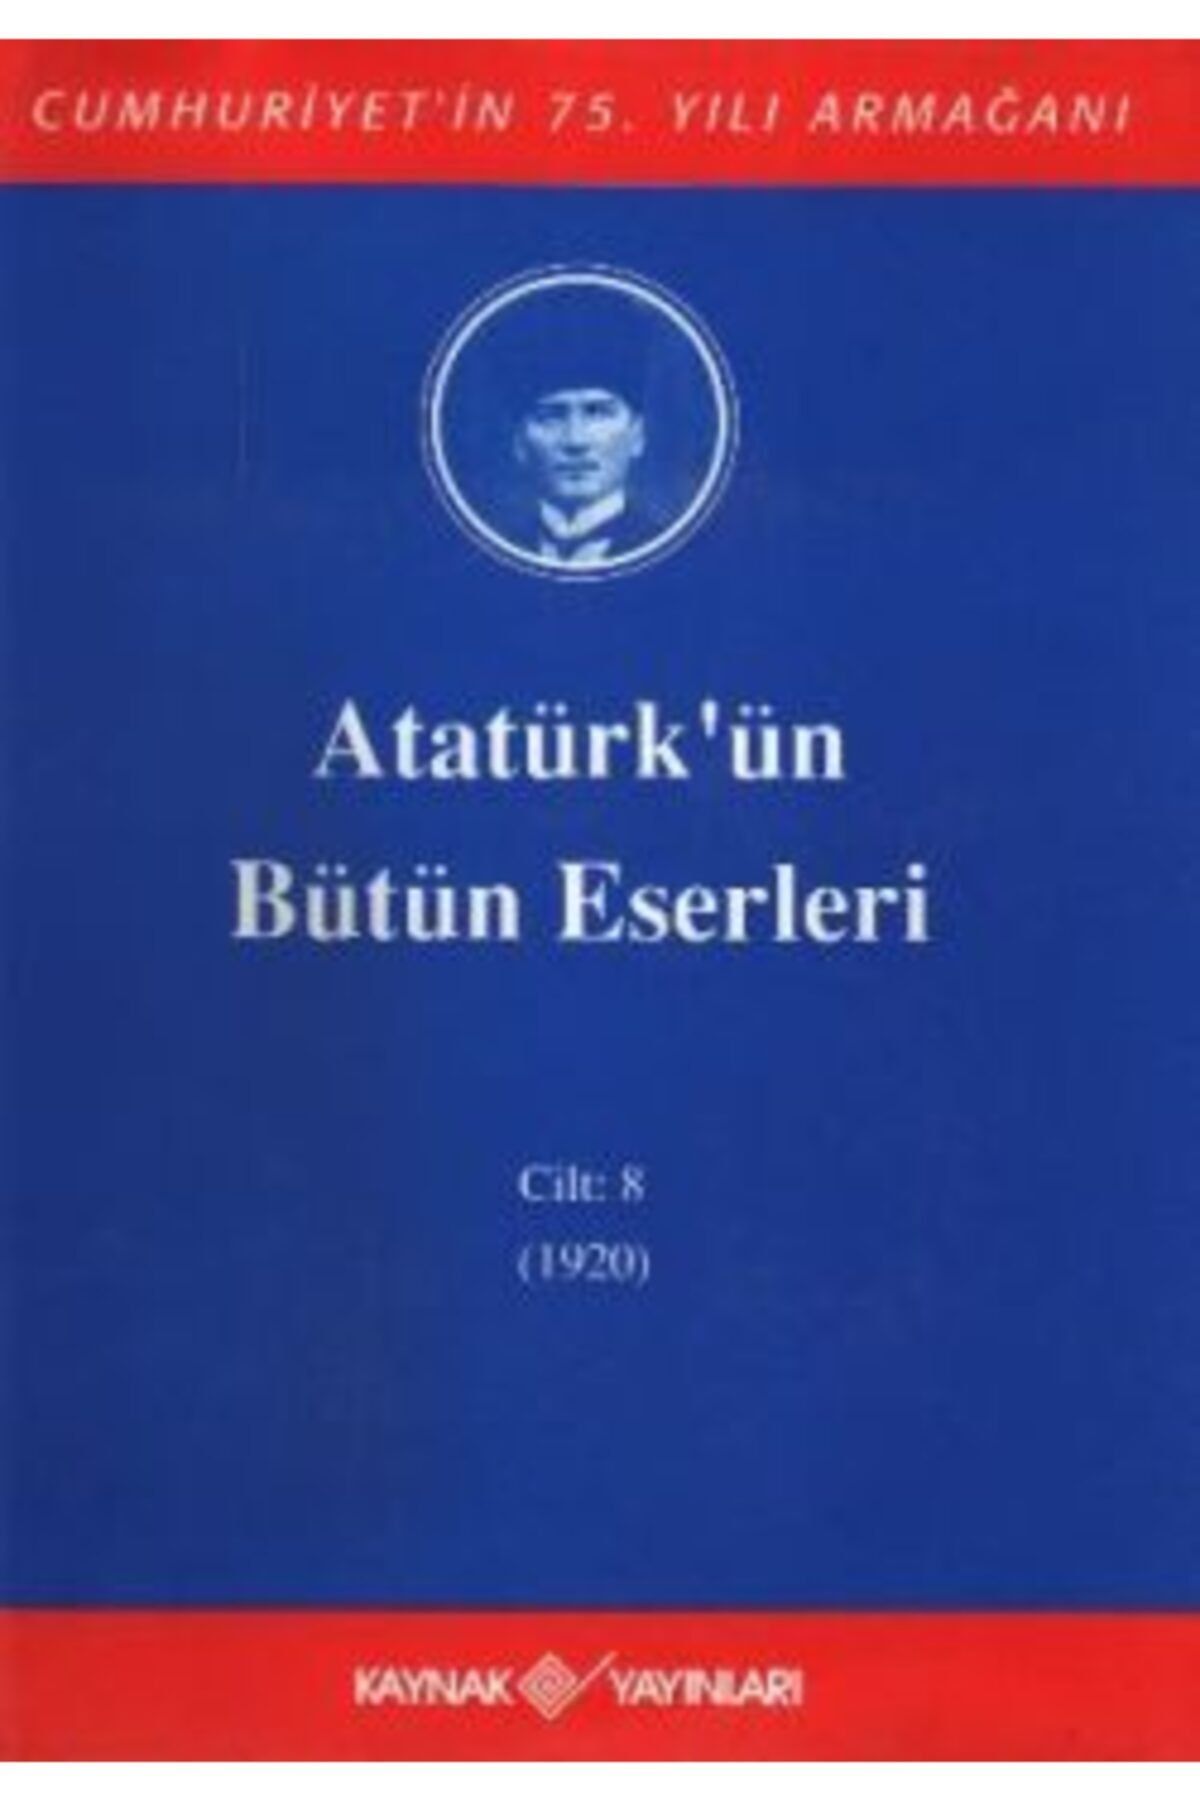 Kaynak Yayınları Atatürk'ün Bütün Eserleri (cilt 8)